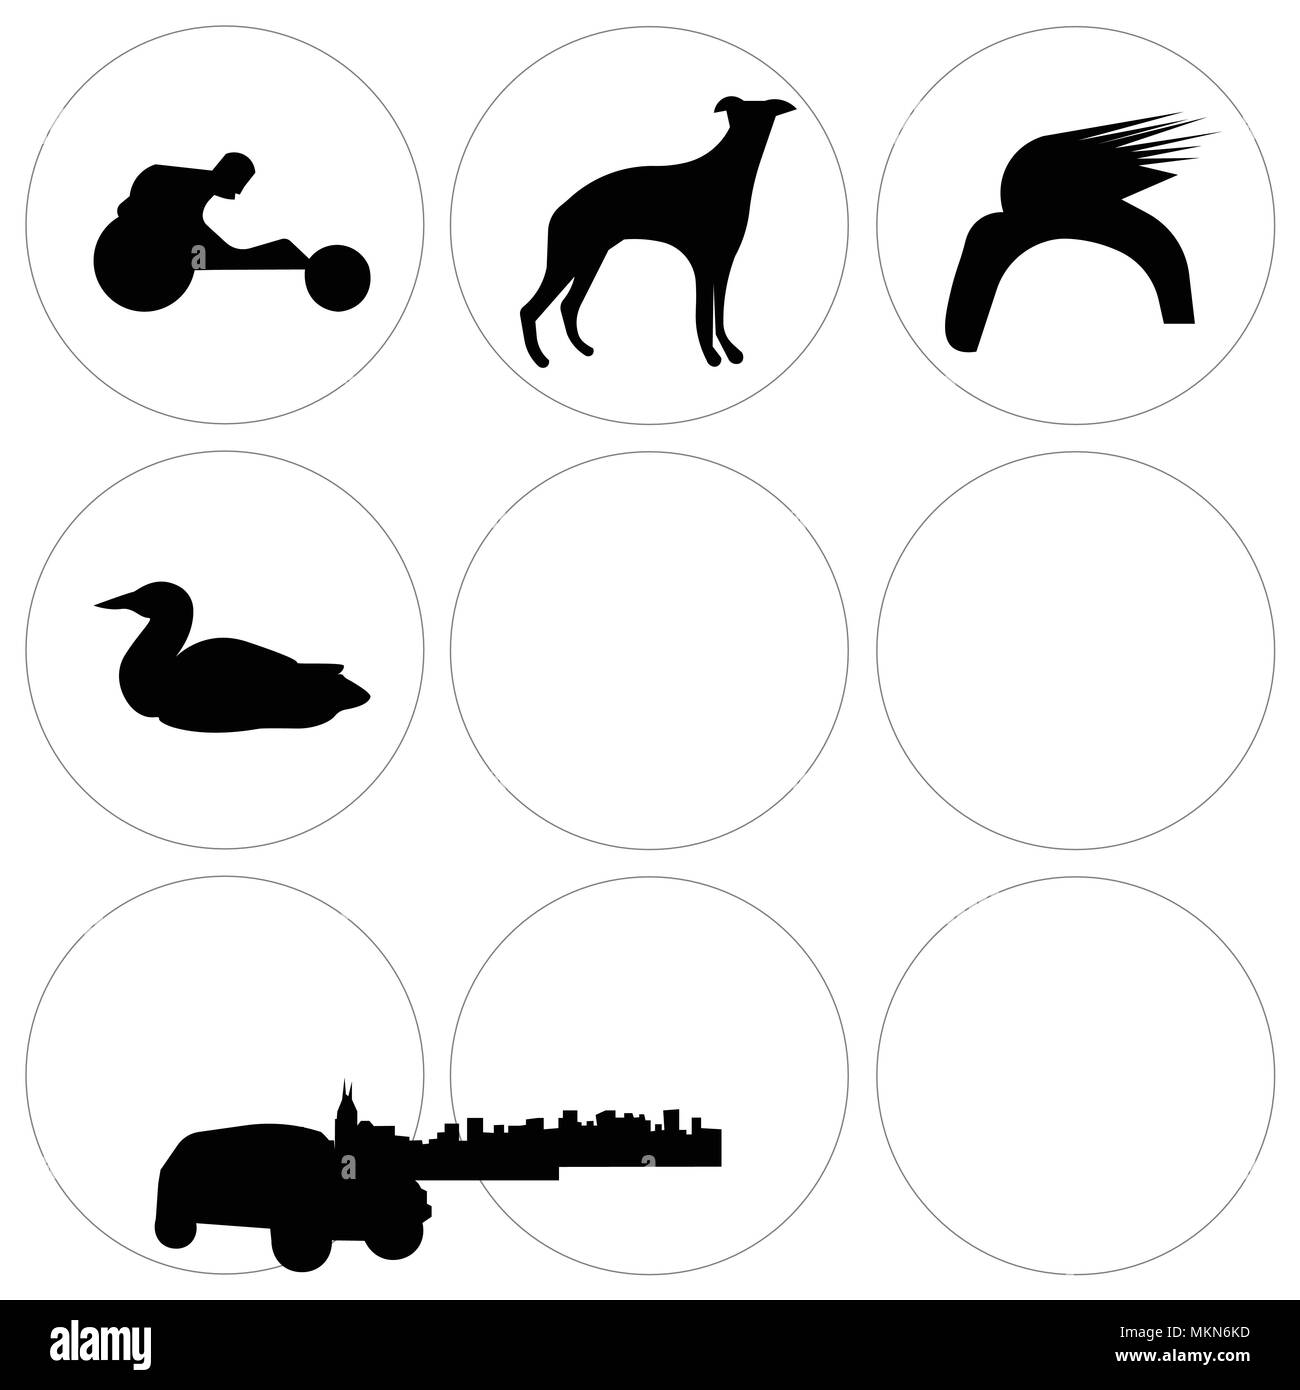 Set Of 9 simple editable icons such as loon, car, donald trump hair, edmonton sky, whippet, pitbull face, free nashville wheelchair racing, cincinnati Stock Vector